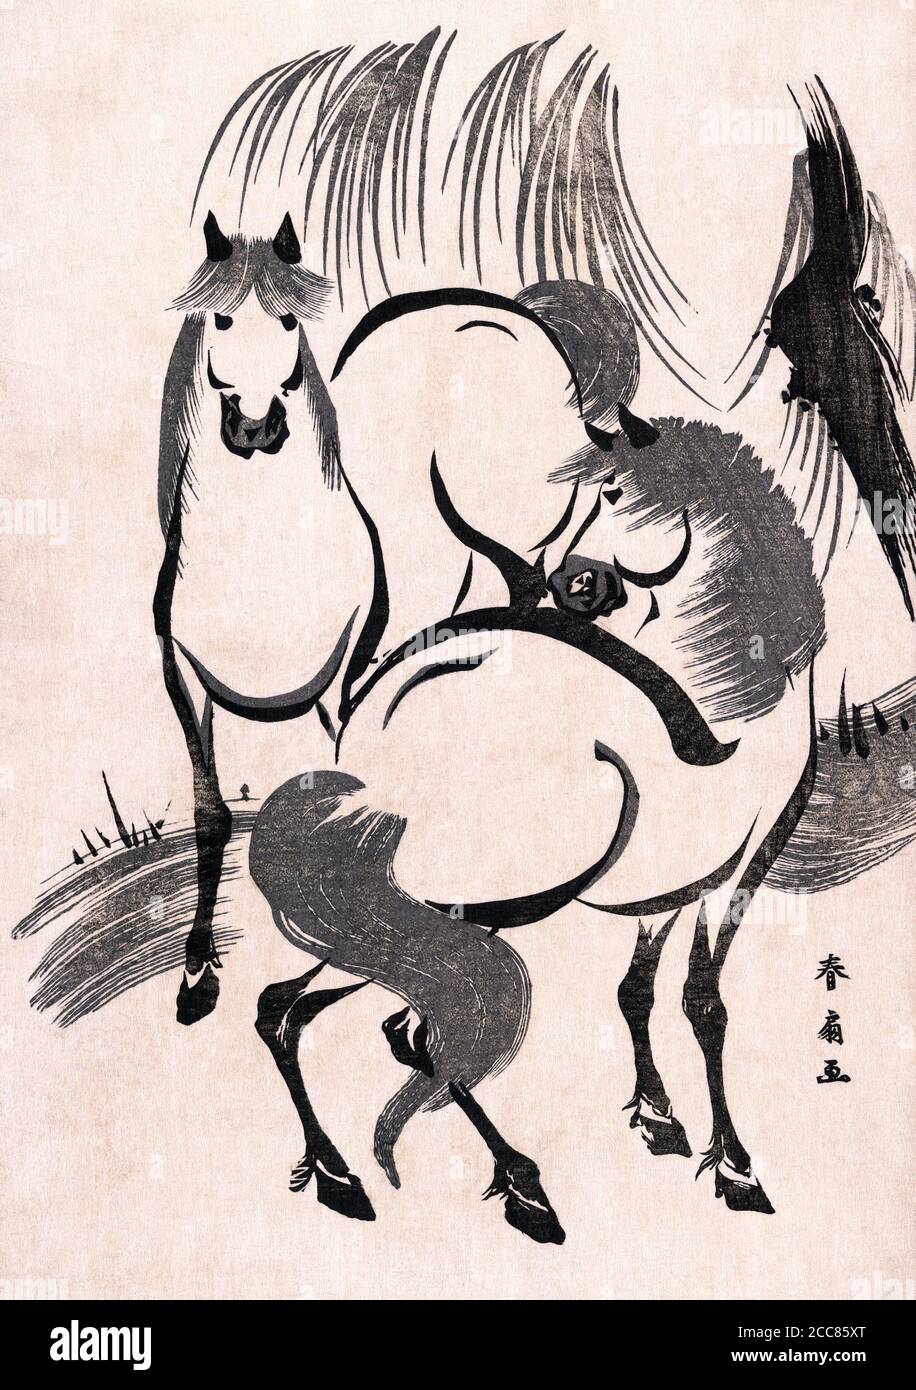 Japón: 'Caballos bajo un árbol de sauce'. Estampado de bloque de madera de Katsukawa Shunsen (1762-1830), c. 1804-1818. Katsukawa Shunsen (1762-1830), también conocido como Shunko II, fue un diseñador de libros y grabados de madera japoneses al estilo ukiyo-e. Shunsen es mejor conocido por sus escenas de género, paisajes y grabados de hermosas mujeres. Foto de stock